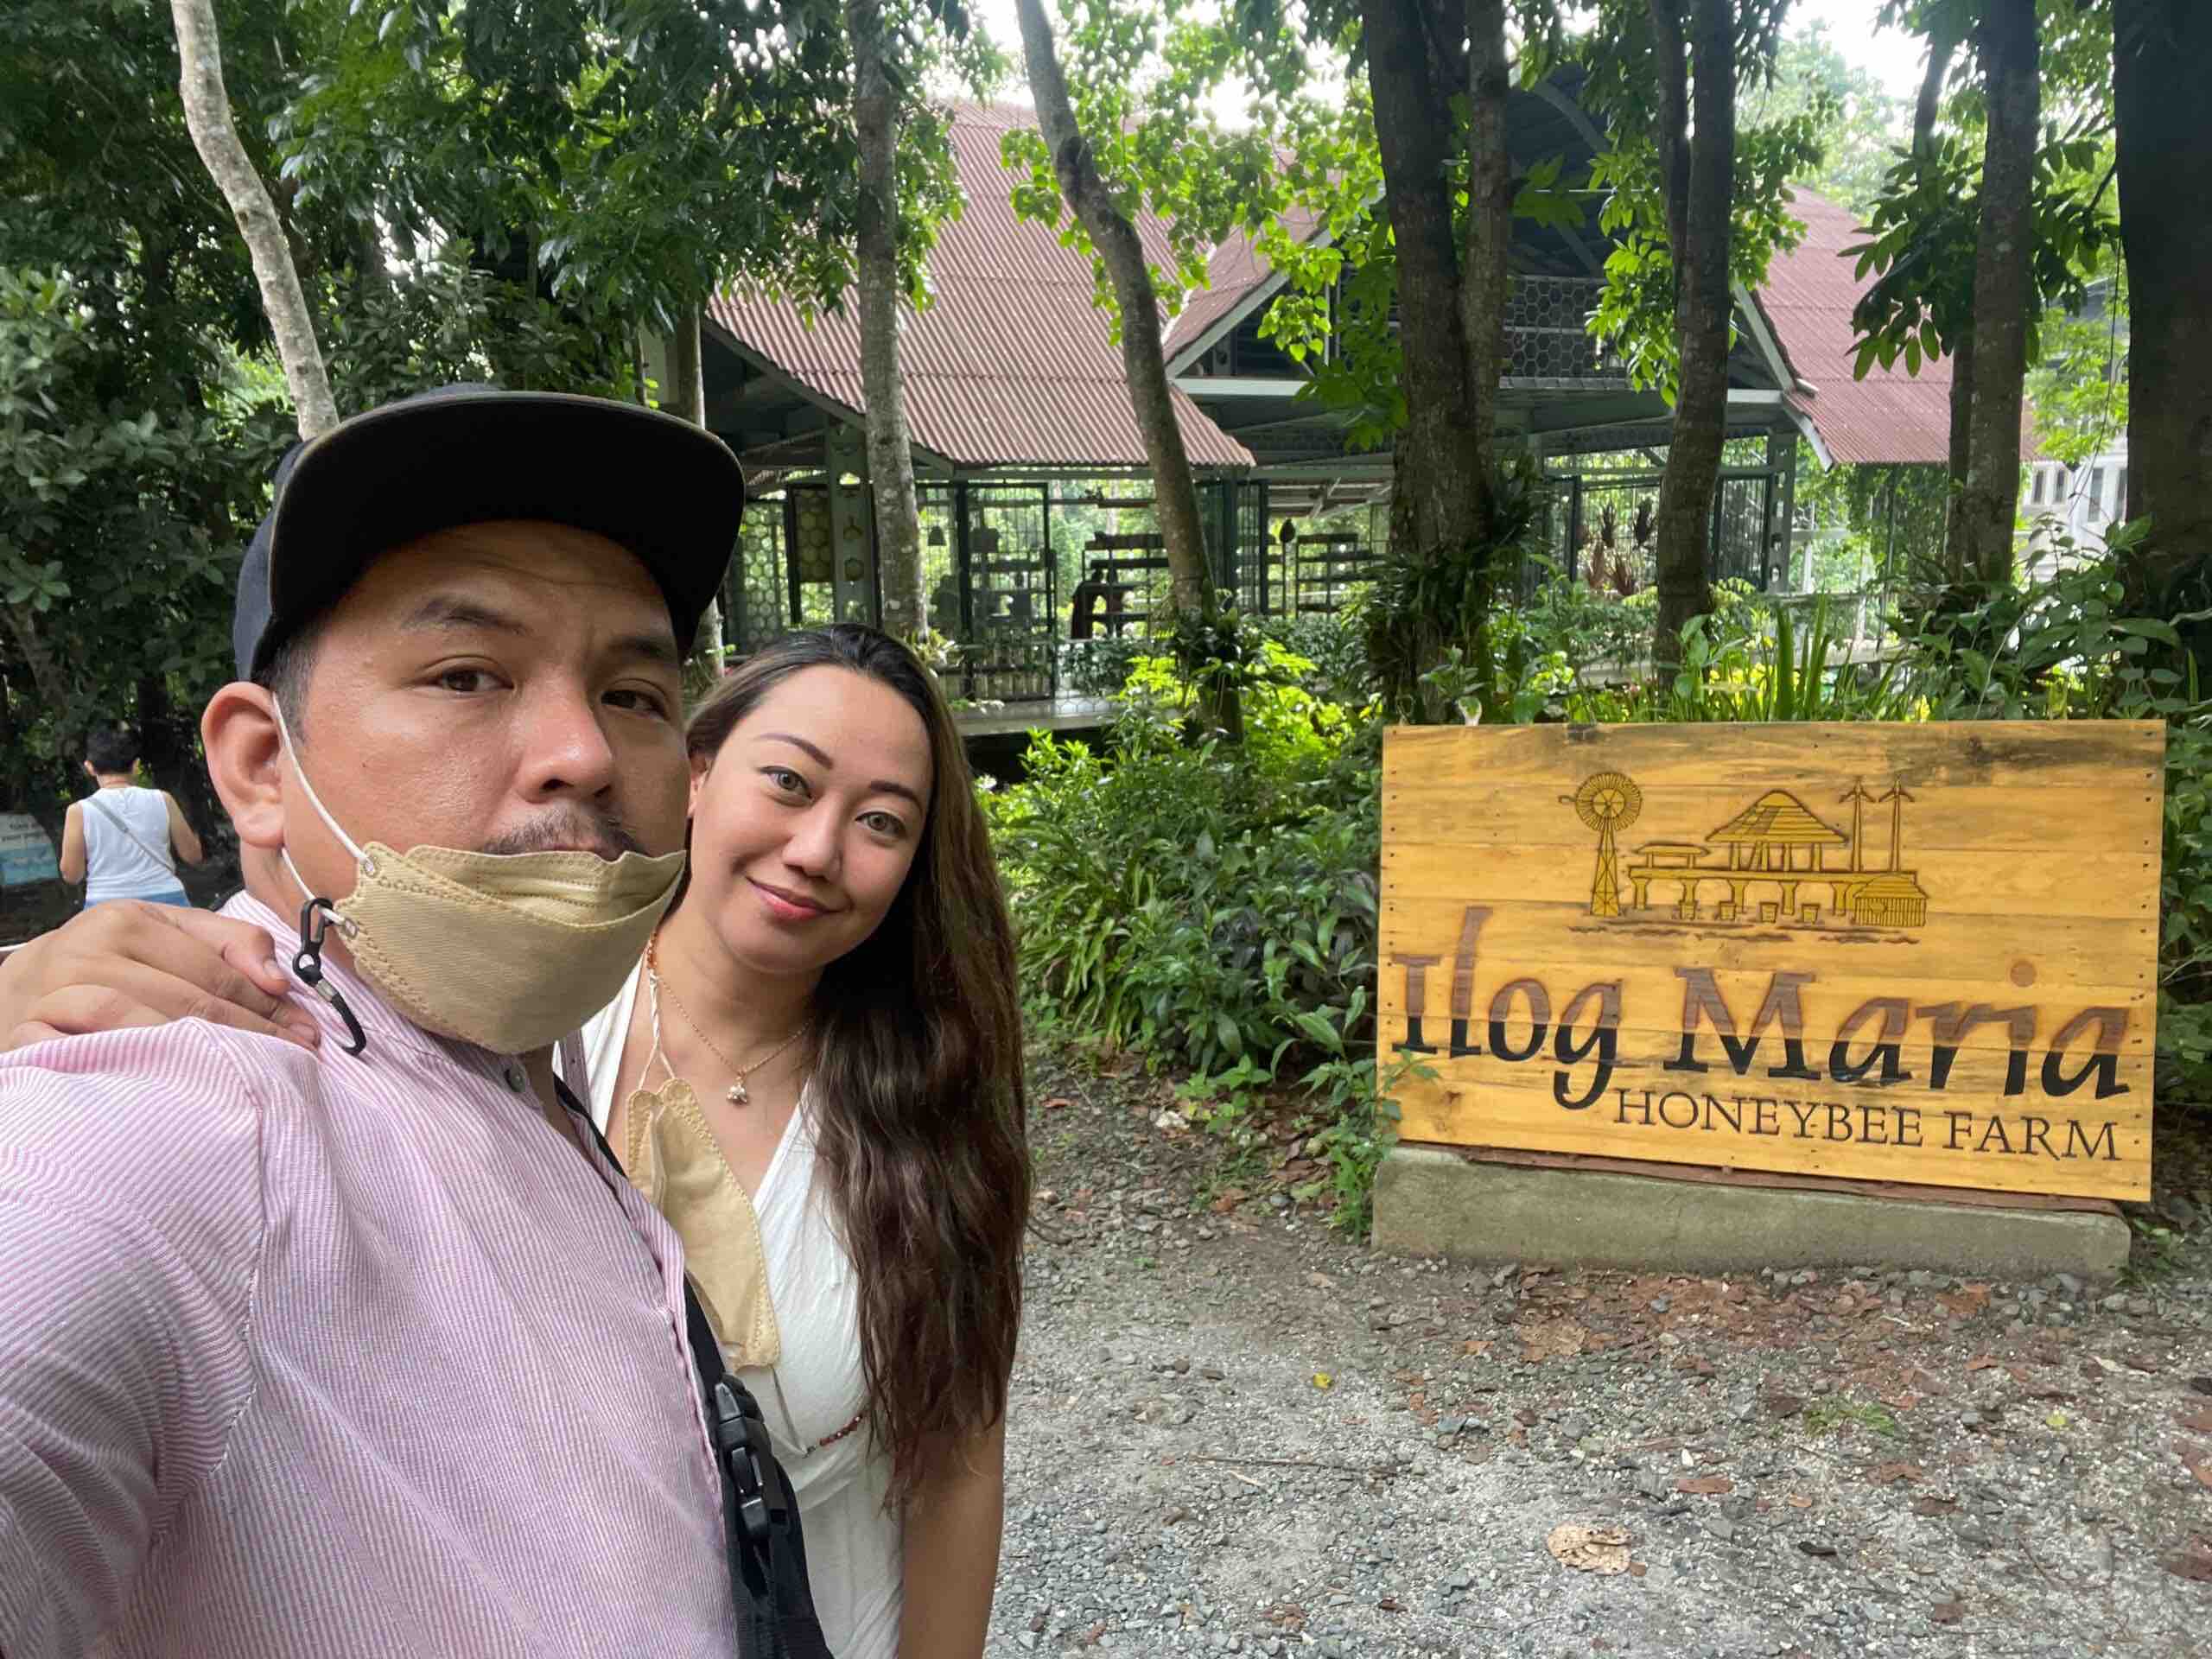 ilog maria honeybee farm in silang cavite | Trisha Sebastian with husband in Ilog Maria